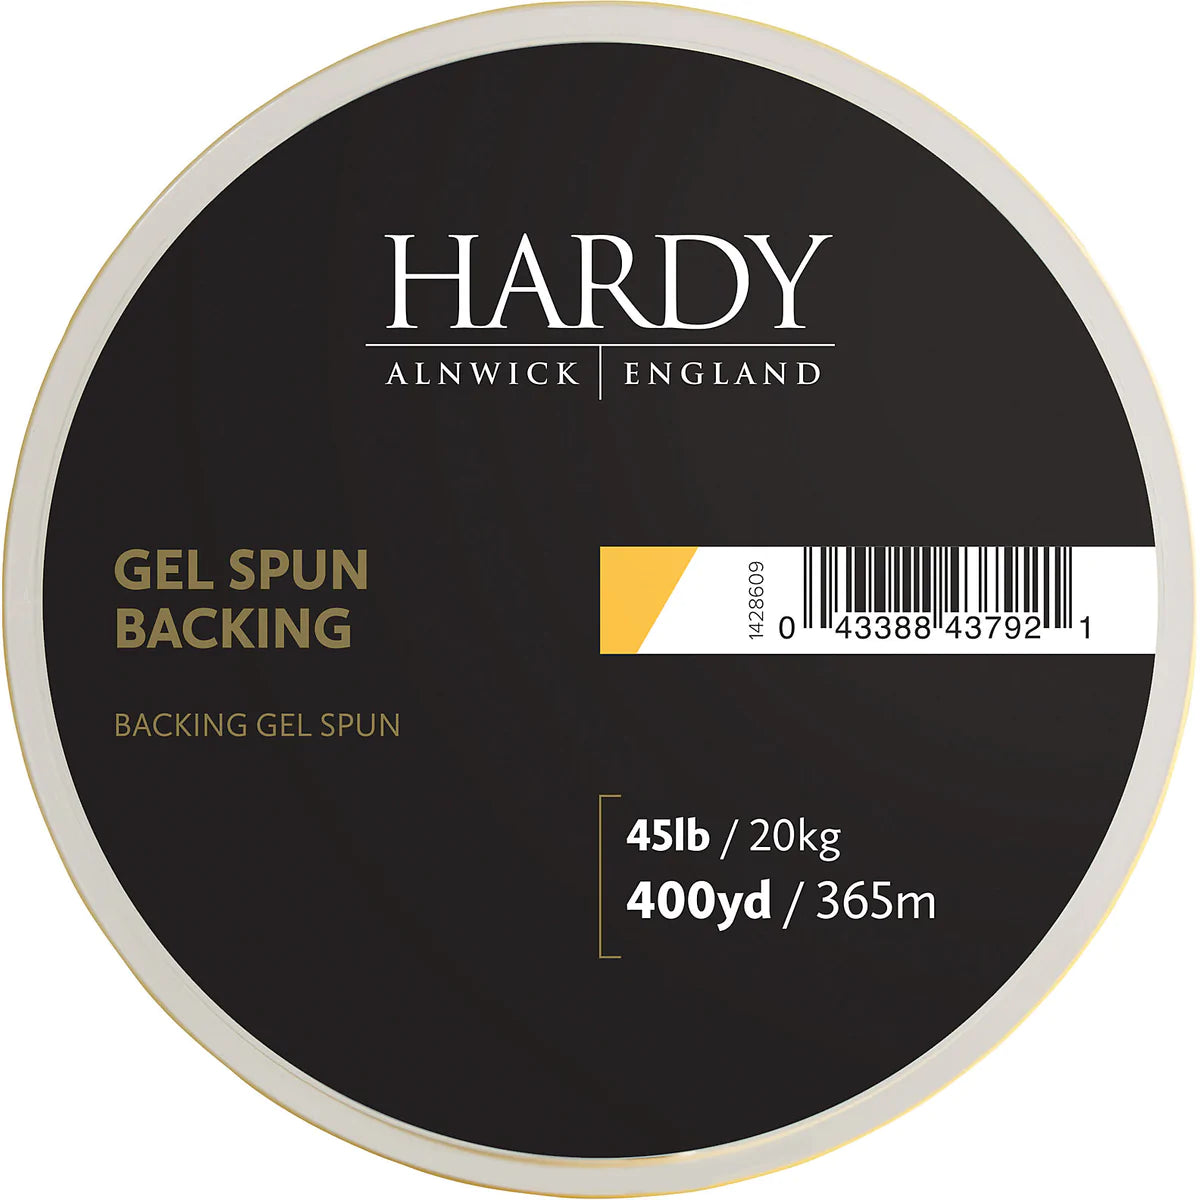 Hardy Gel Spun Backing 45lb / 600 yards / Lime Green